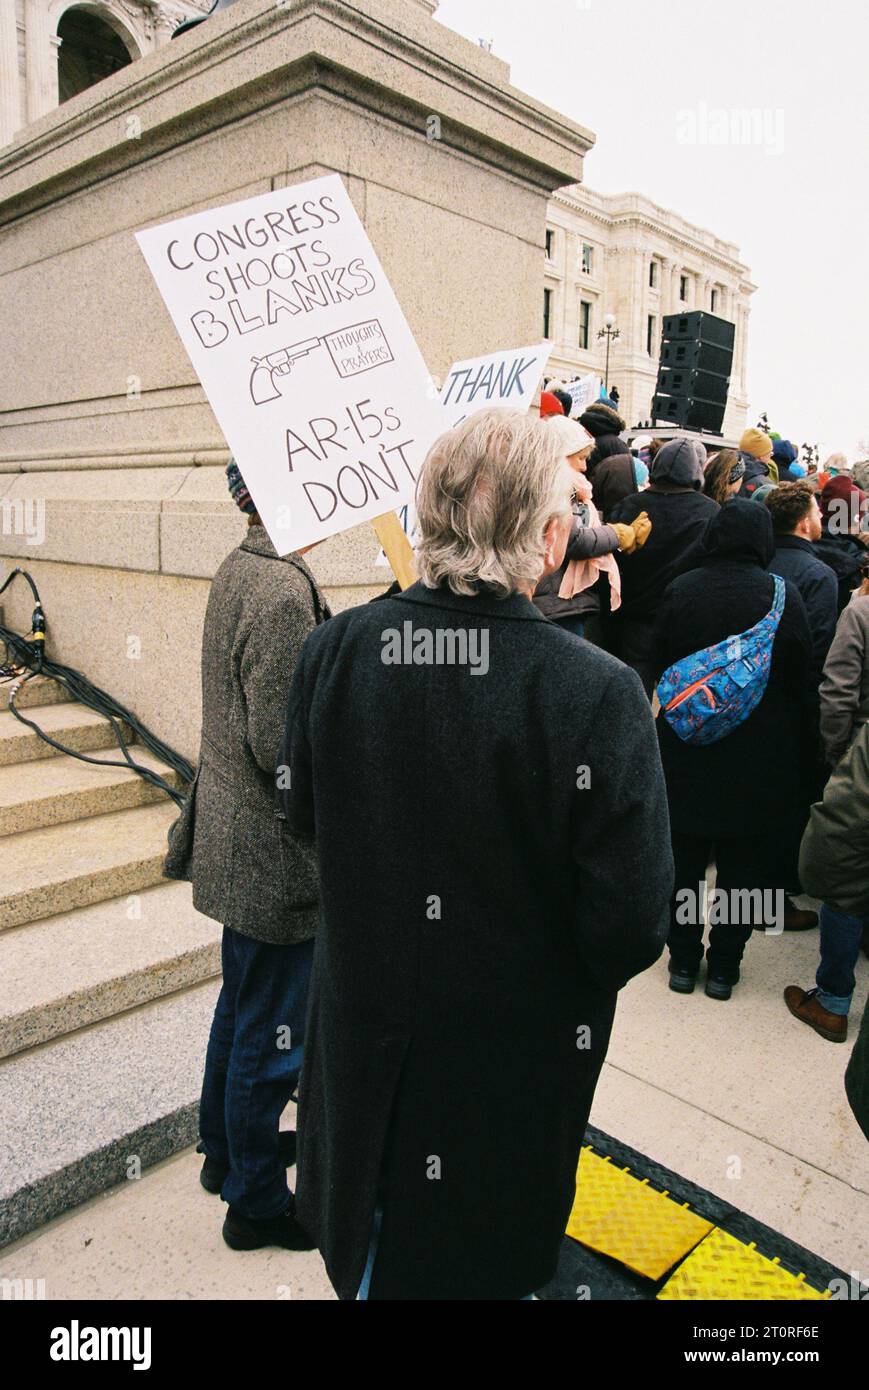 Eine Serie von Bildern, die bei einem Protest gegen die Waffenkontrolle in St. Paul, Minnesota, aufgenommen wurden Stockfoto